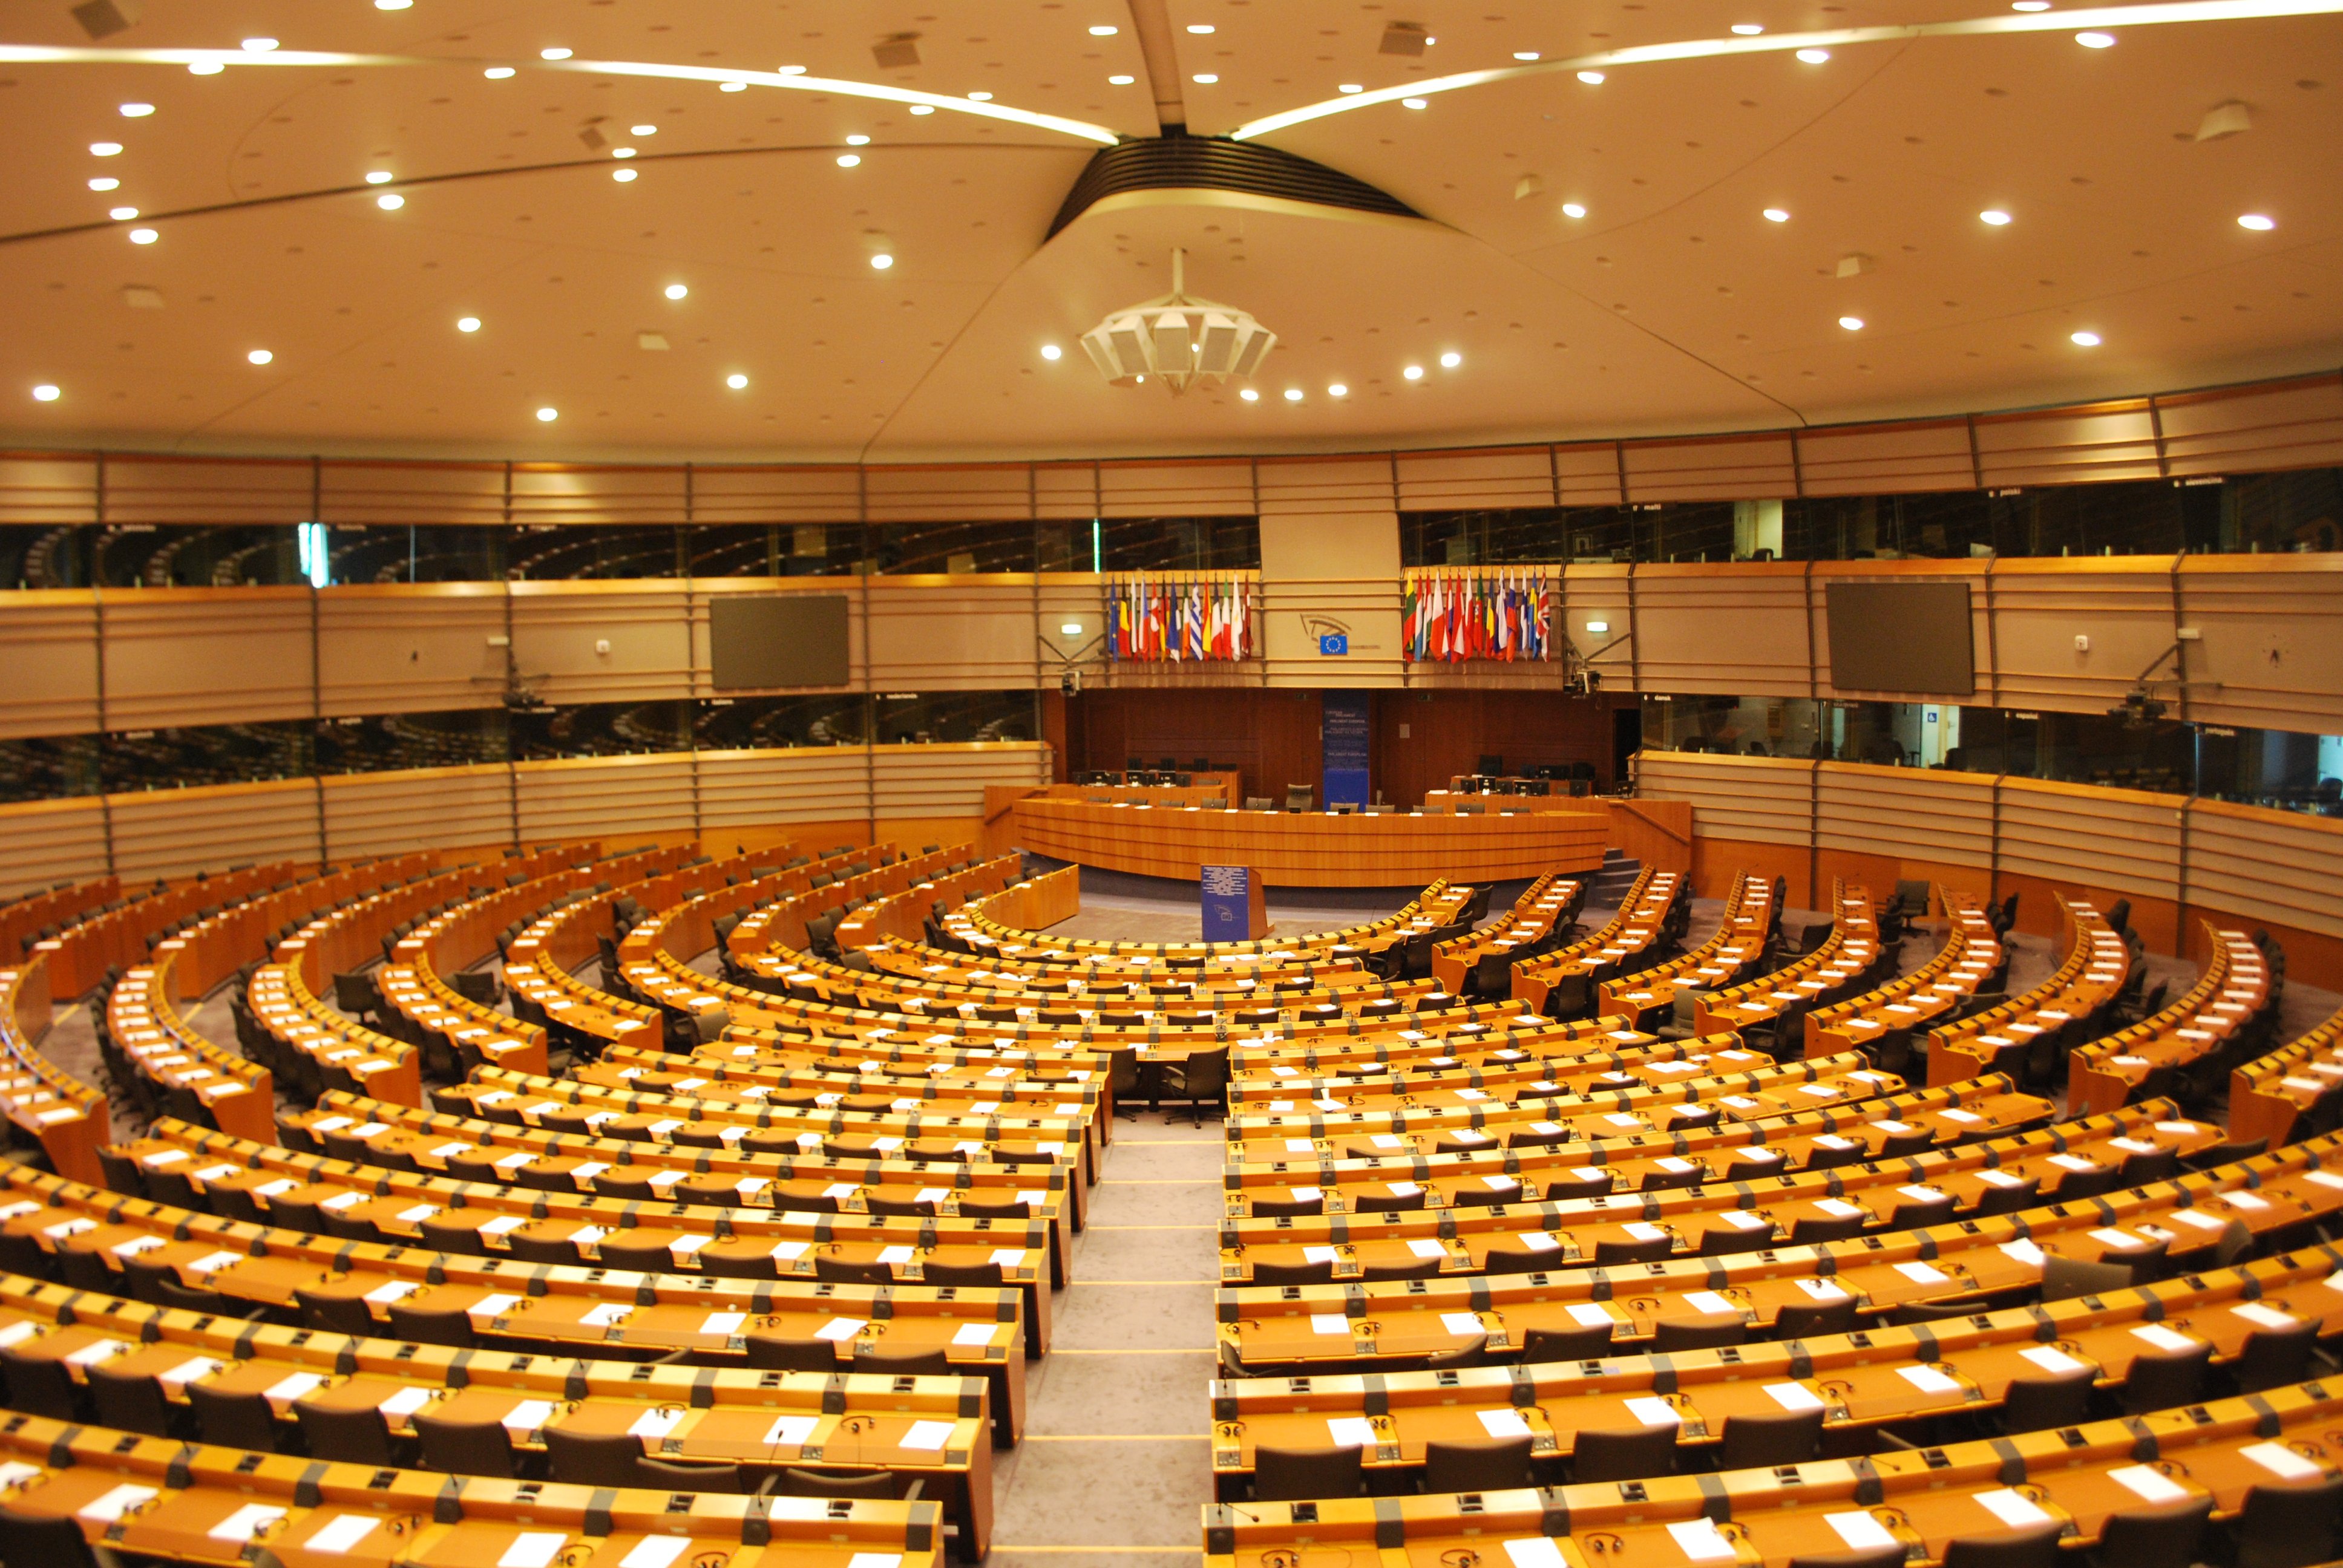 Une très grande salle avec des pupitres disposés en arcs de cercle concentriques, et un podium au milieu, et derrière ce podium un grand bureau surmonté de drapeaux.